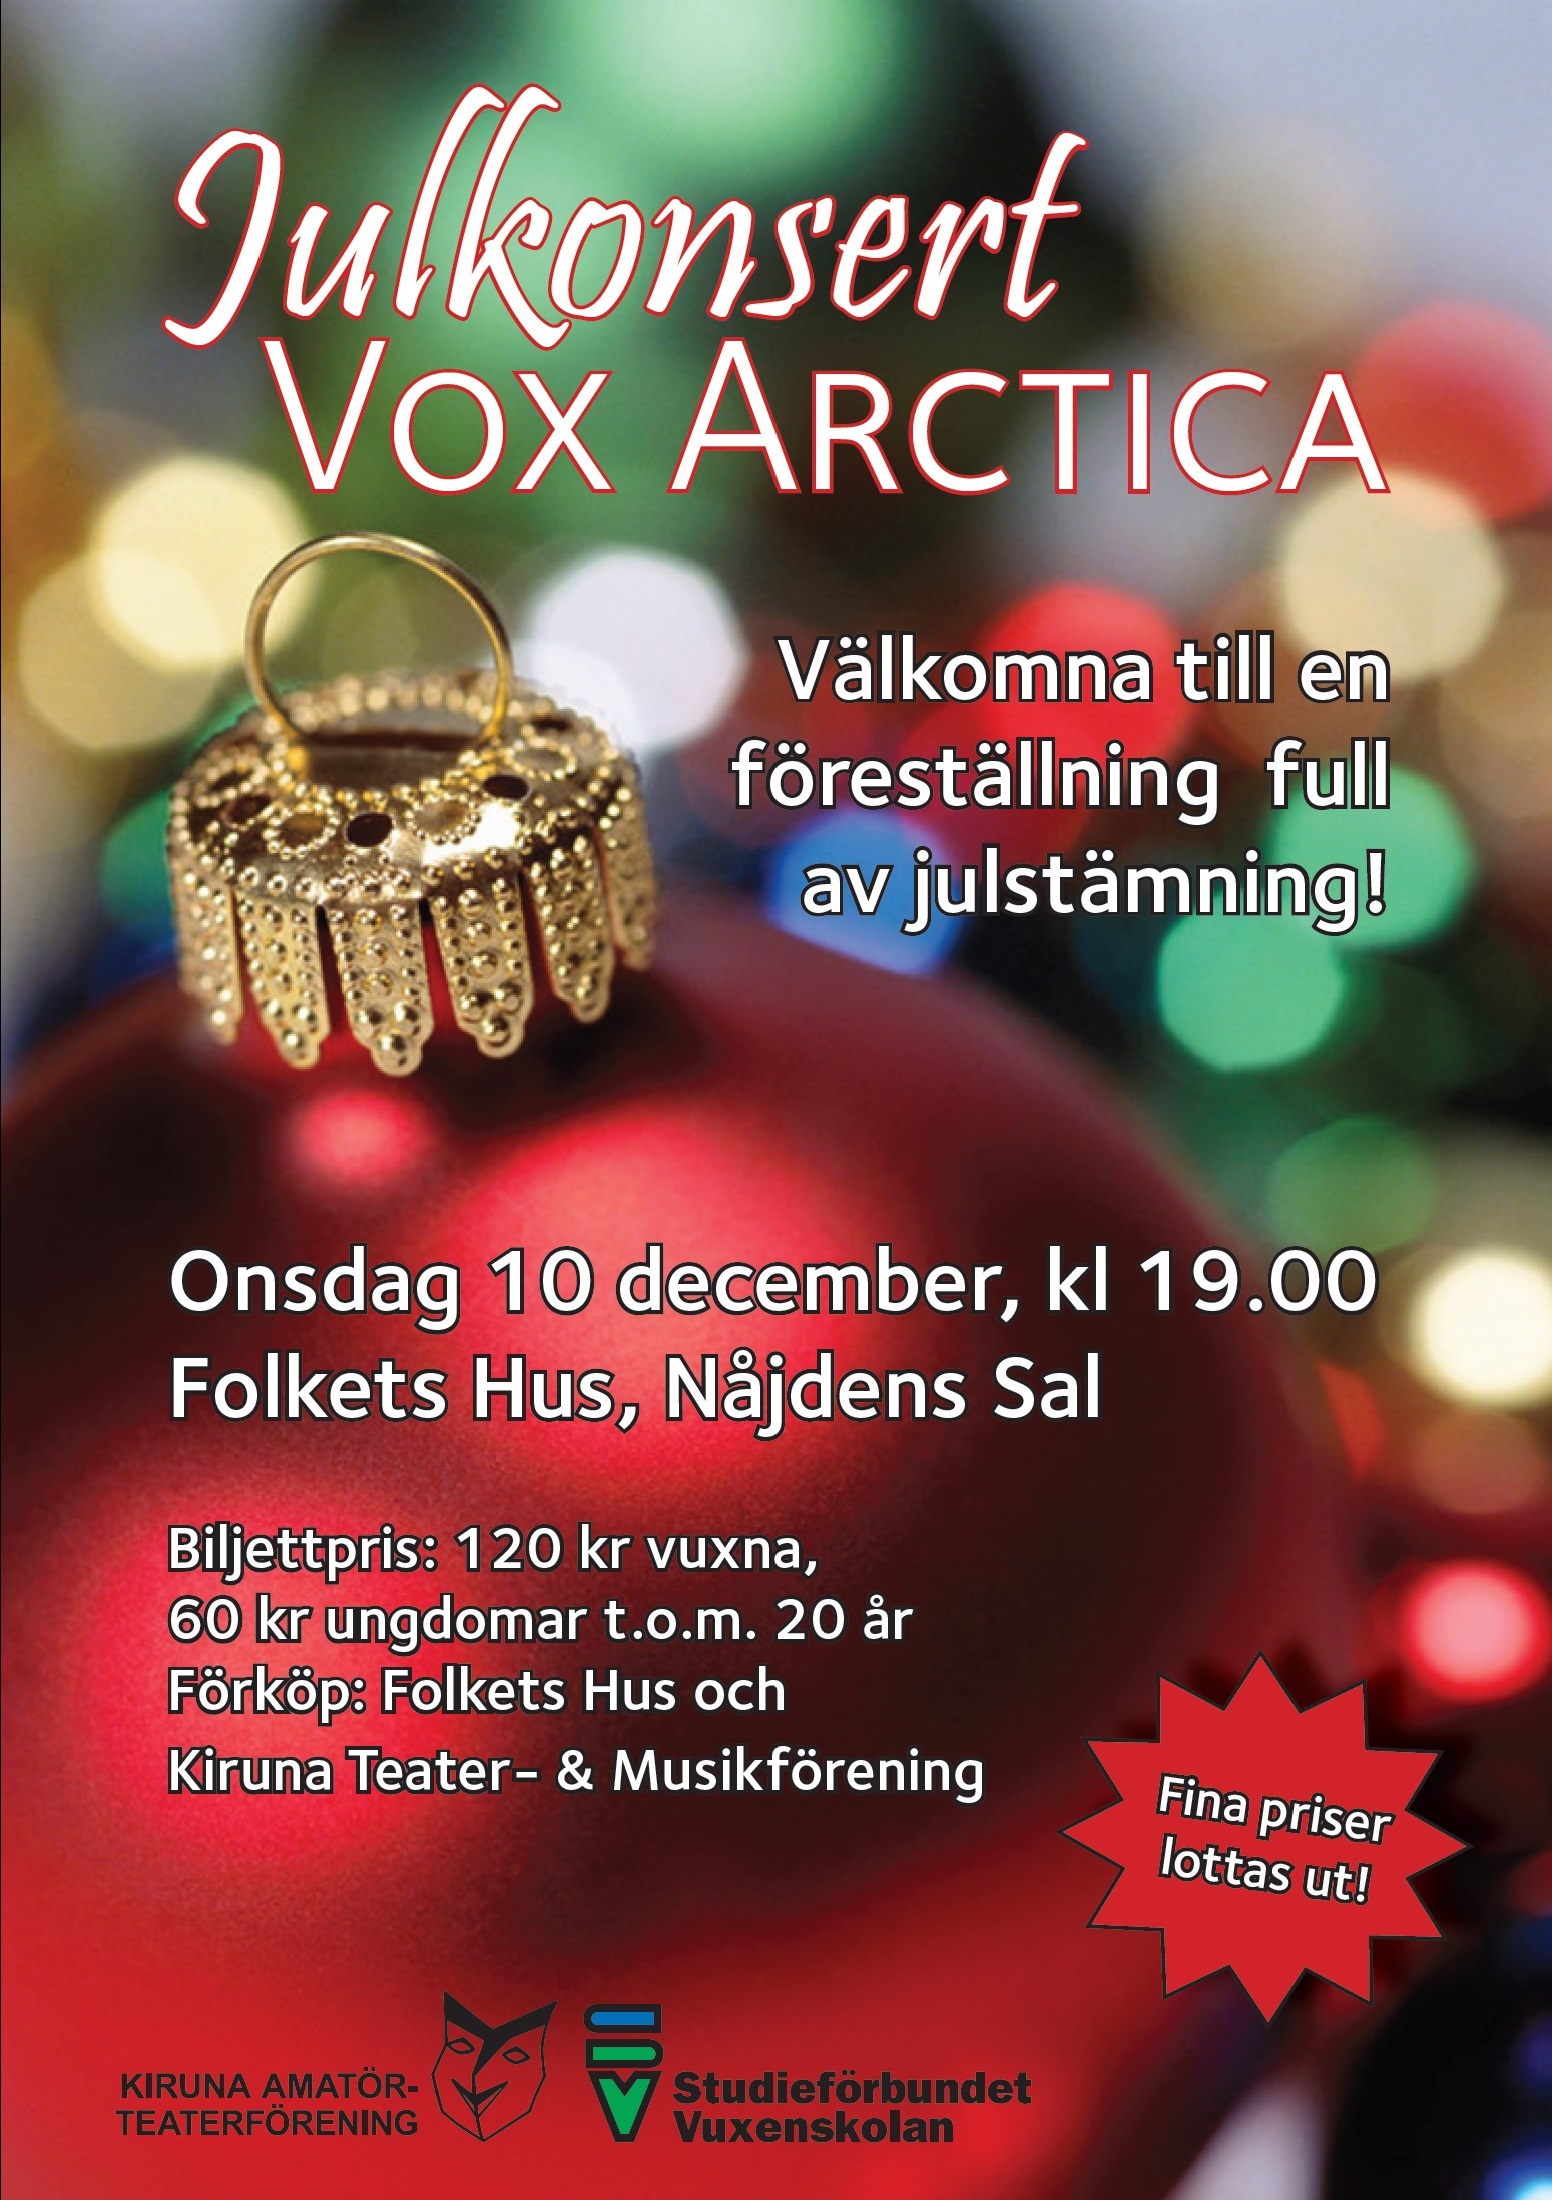 Affisch för Vox Arctica Julkonsert på Musikföreställning i Kiruna på Kiruna Folkets Hus